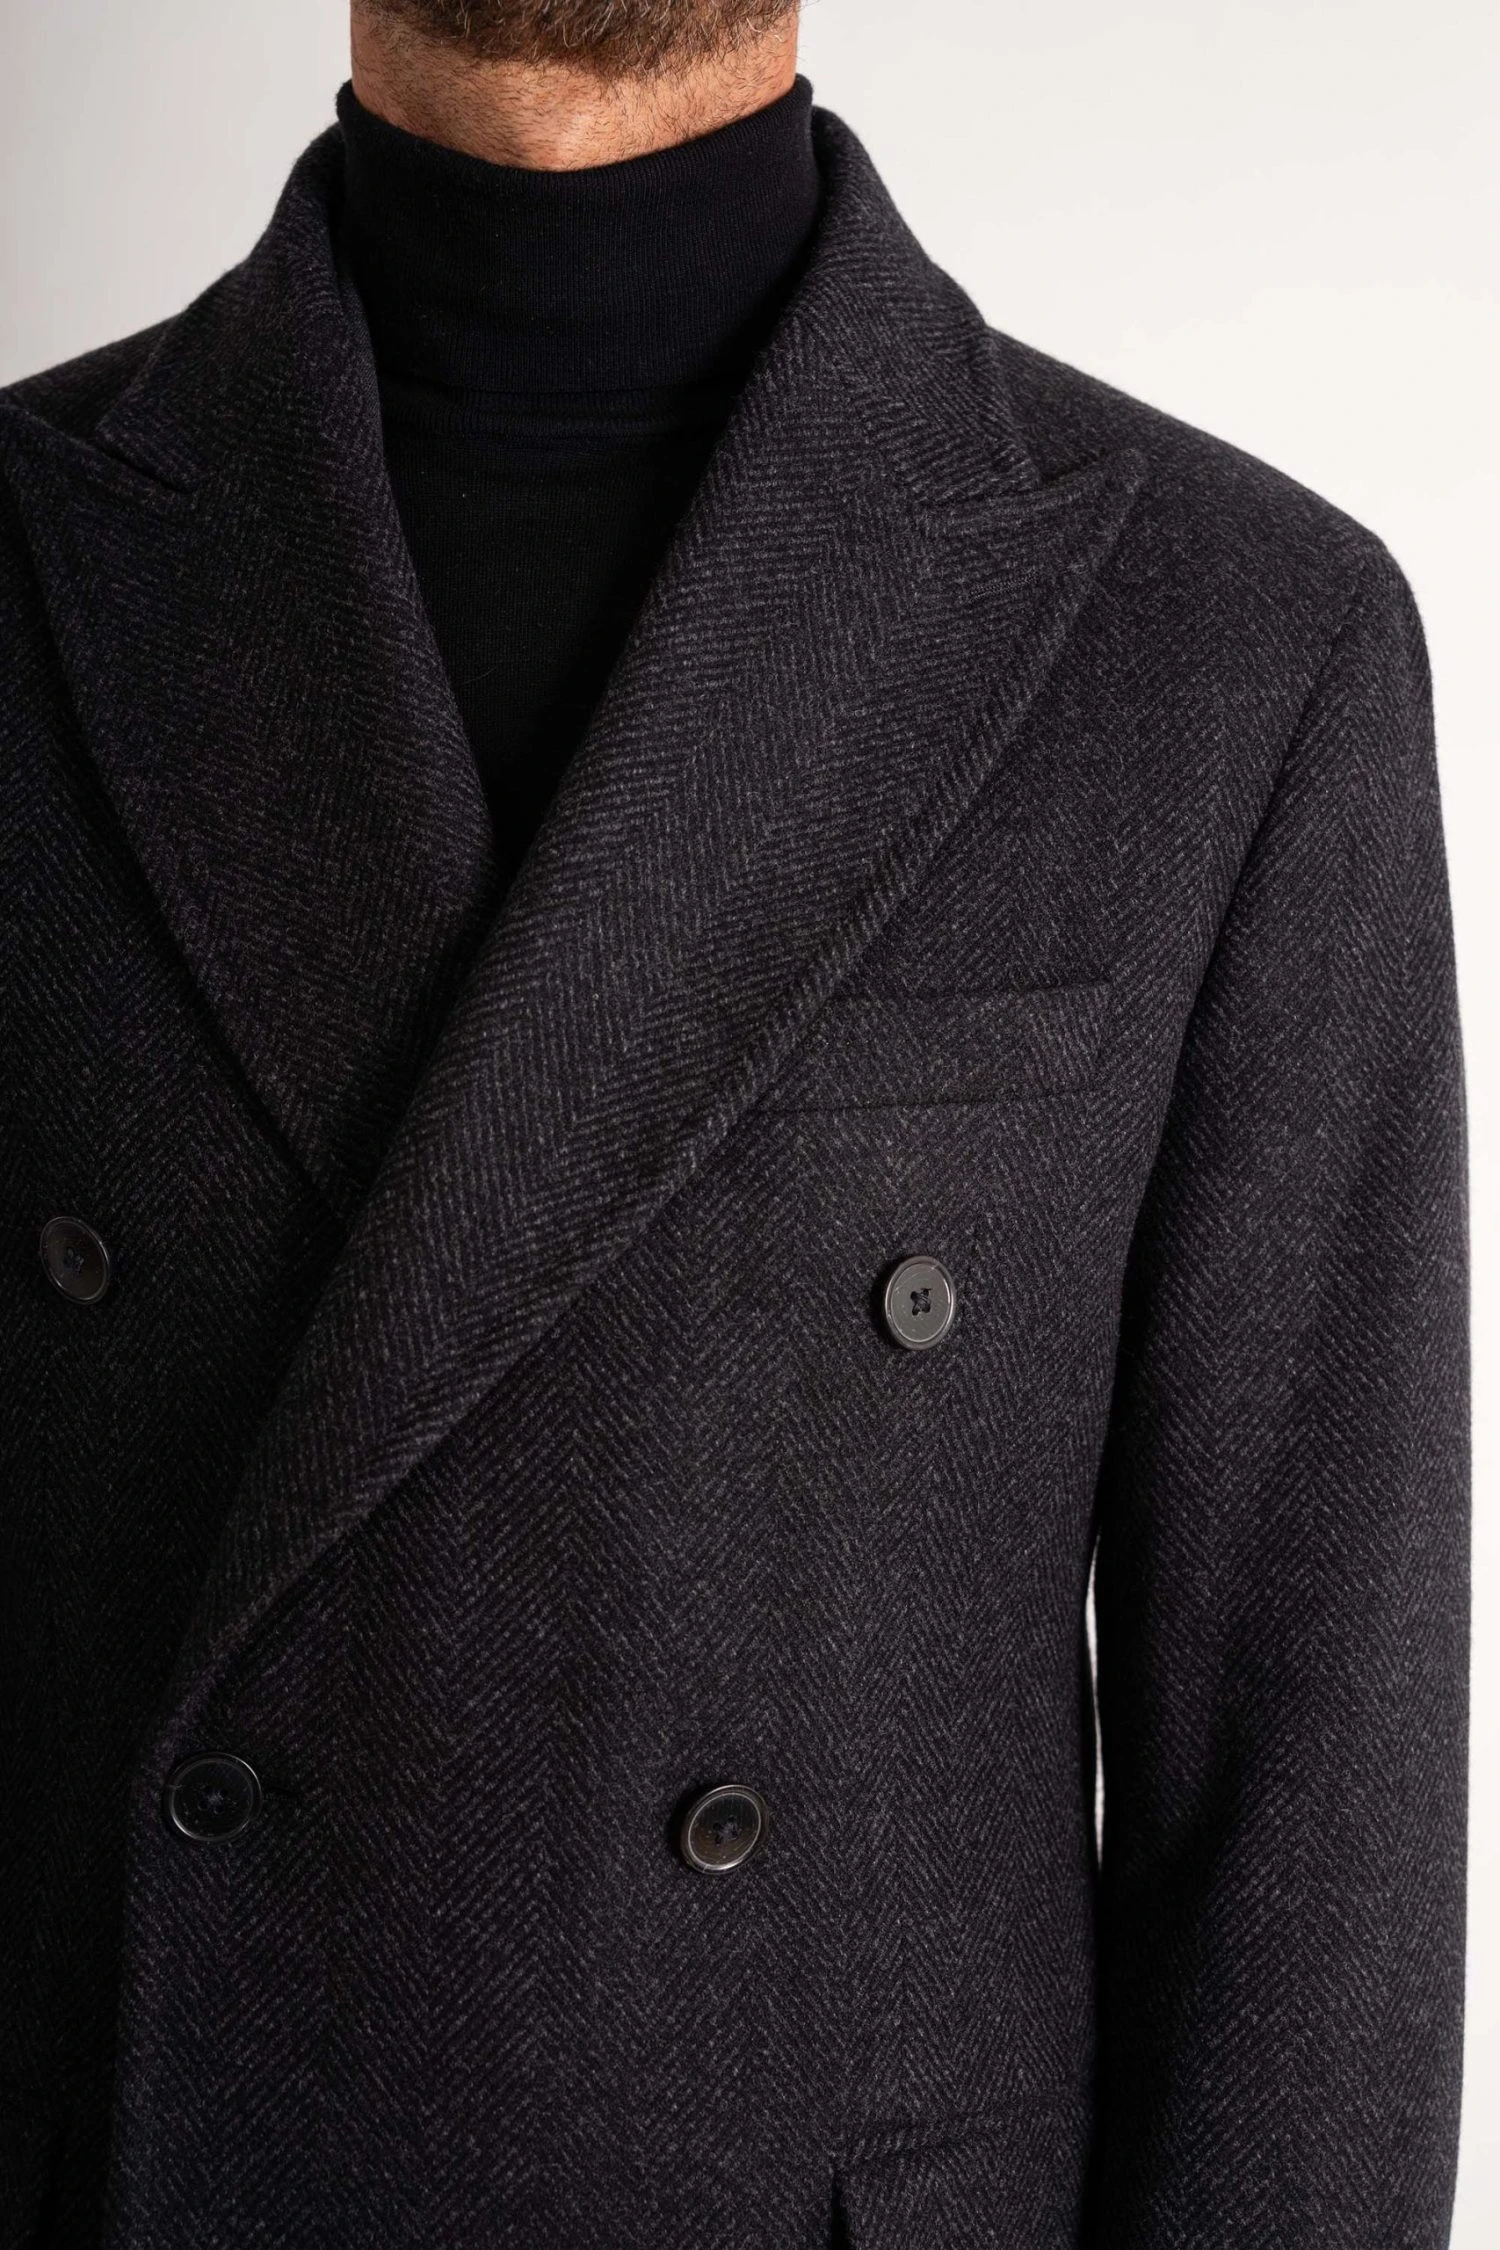 closeup Charcoal Wool and Cashmere Herringbone Overcoat